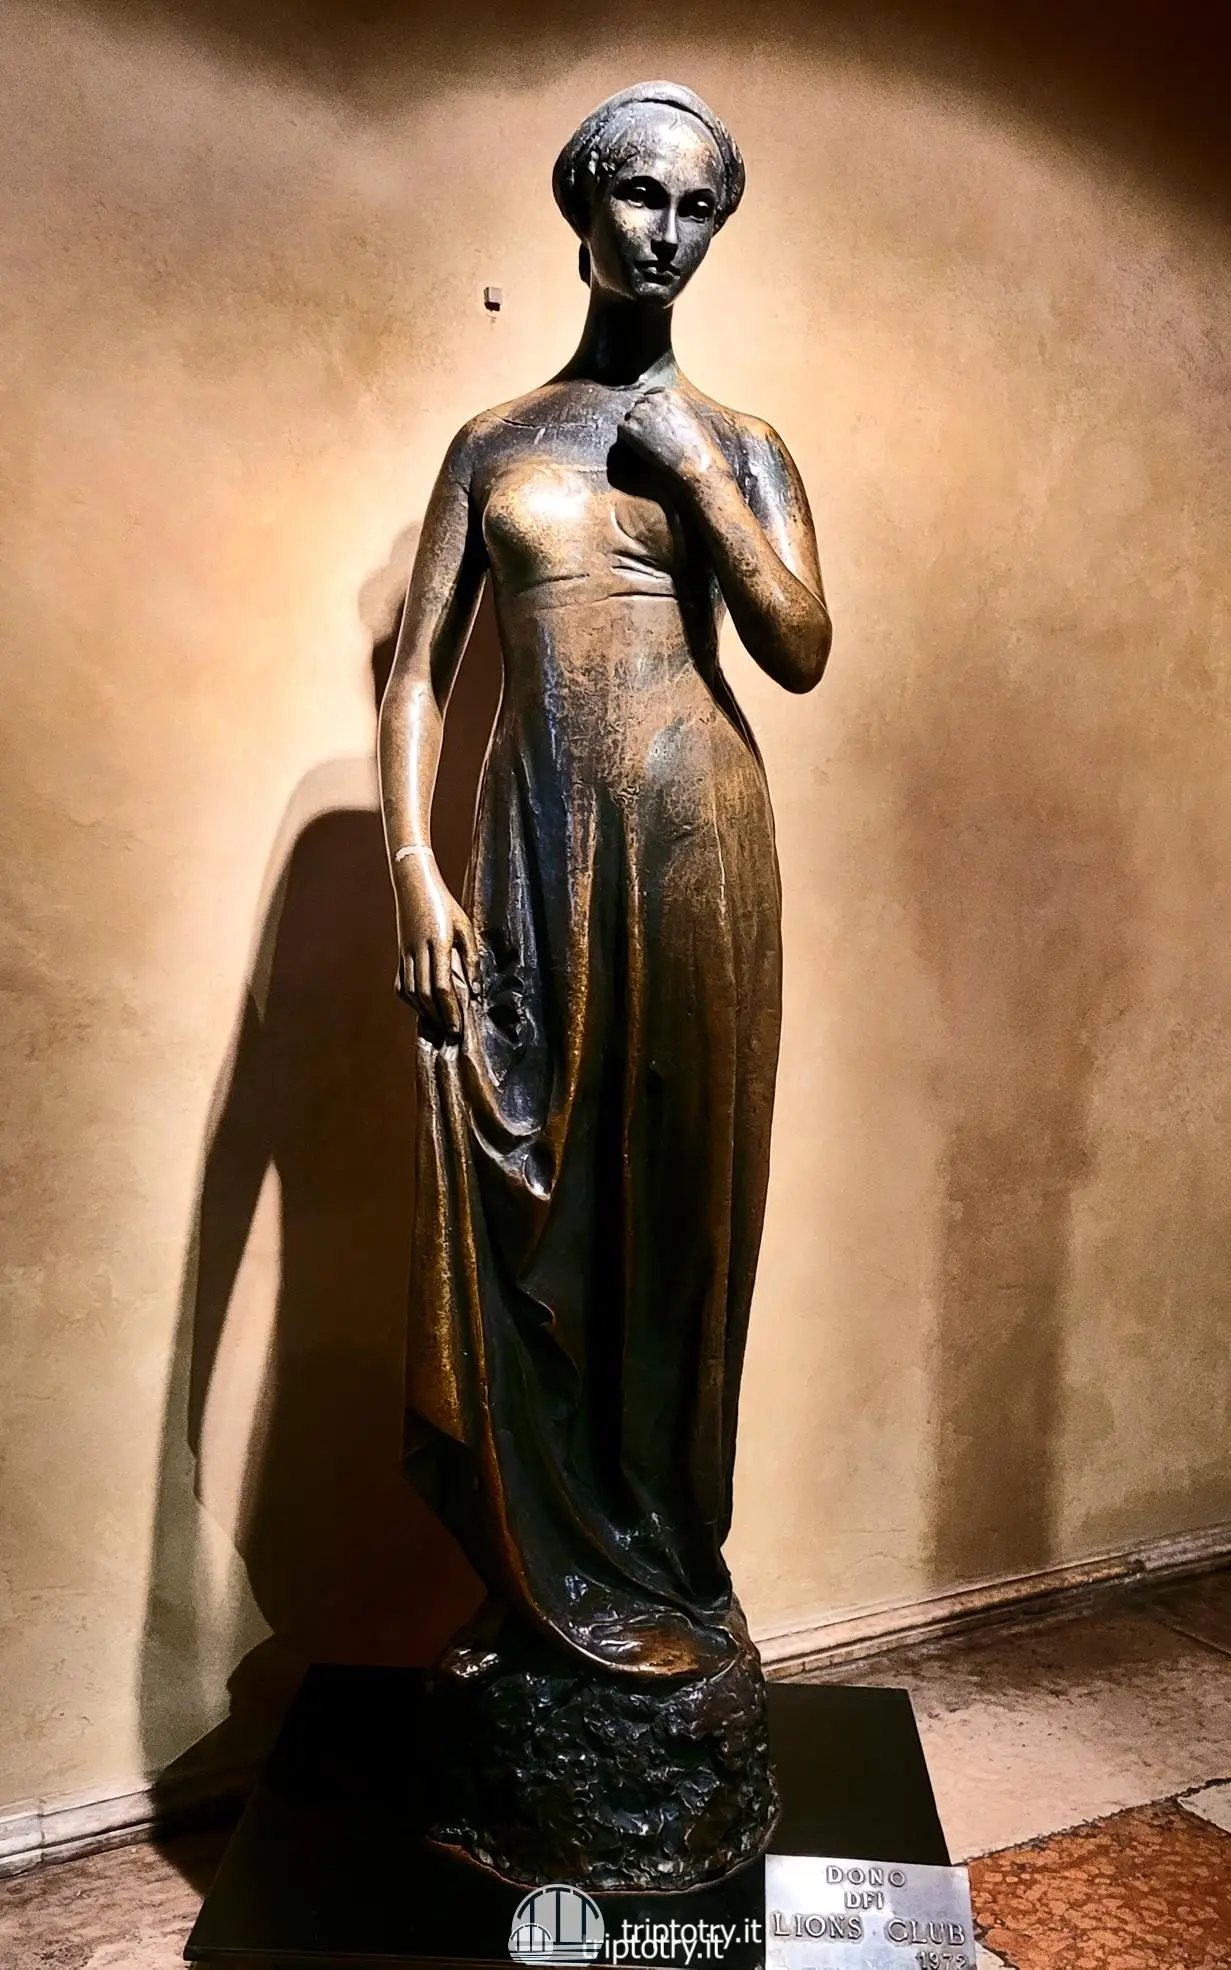 La statua di Giulietta Capuleti conservata nella Casa di Giulietta a Verona - Verona what to see